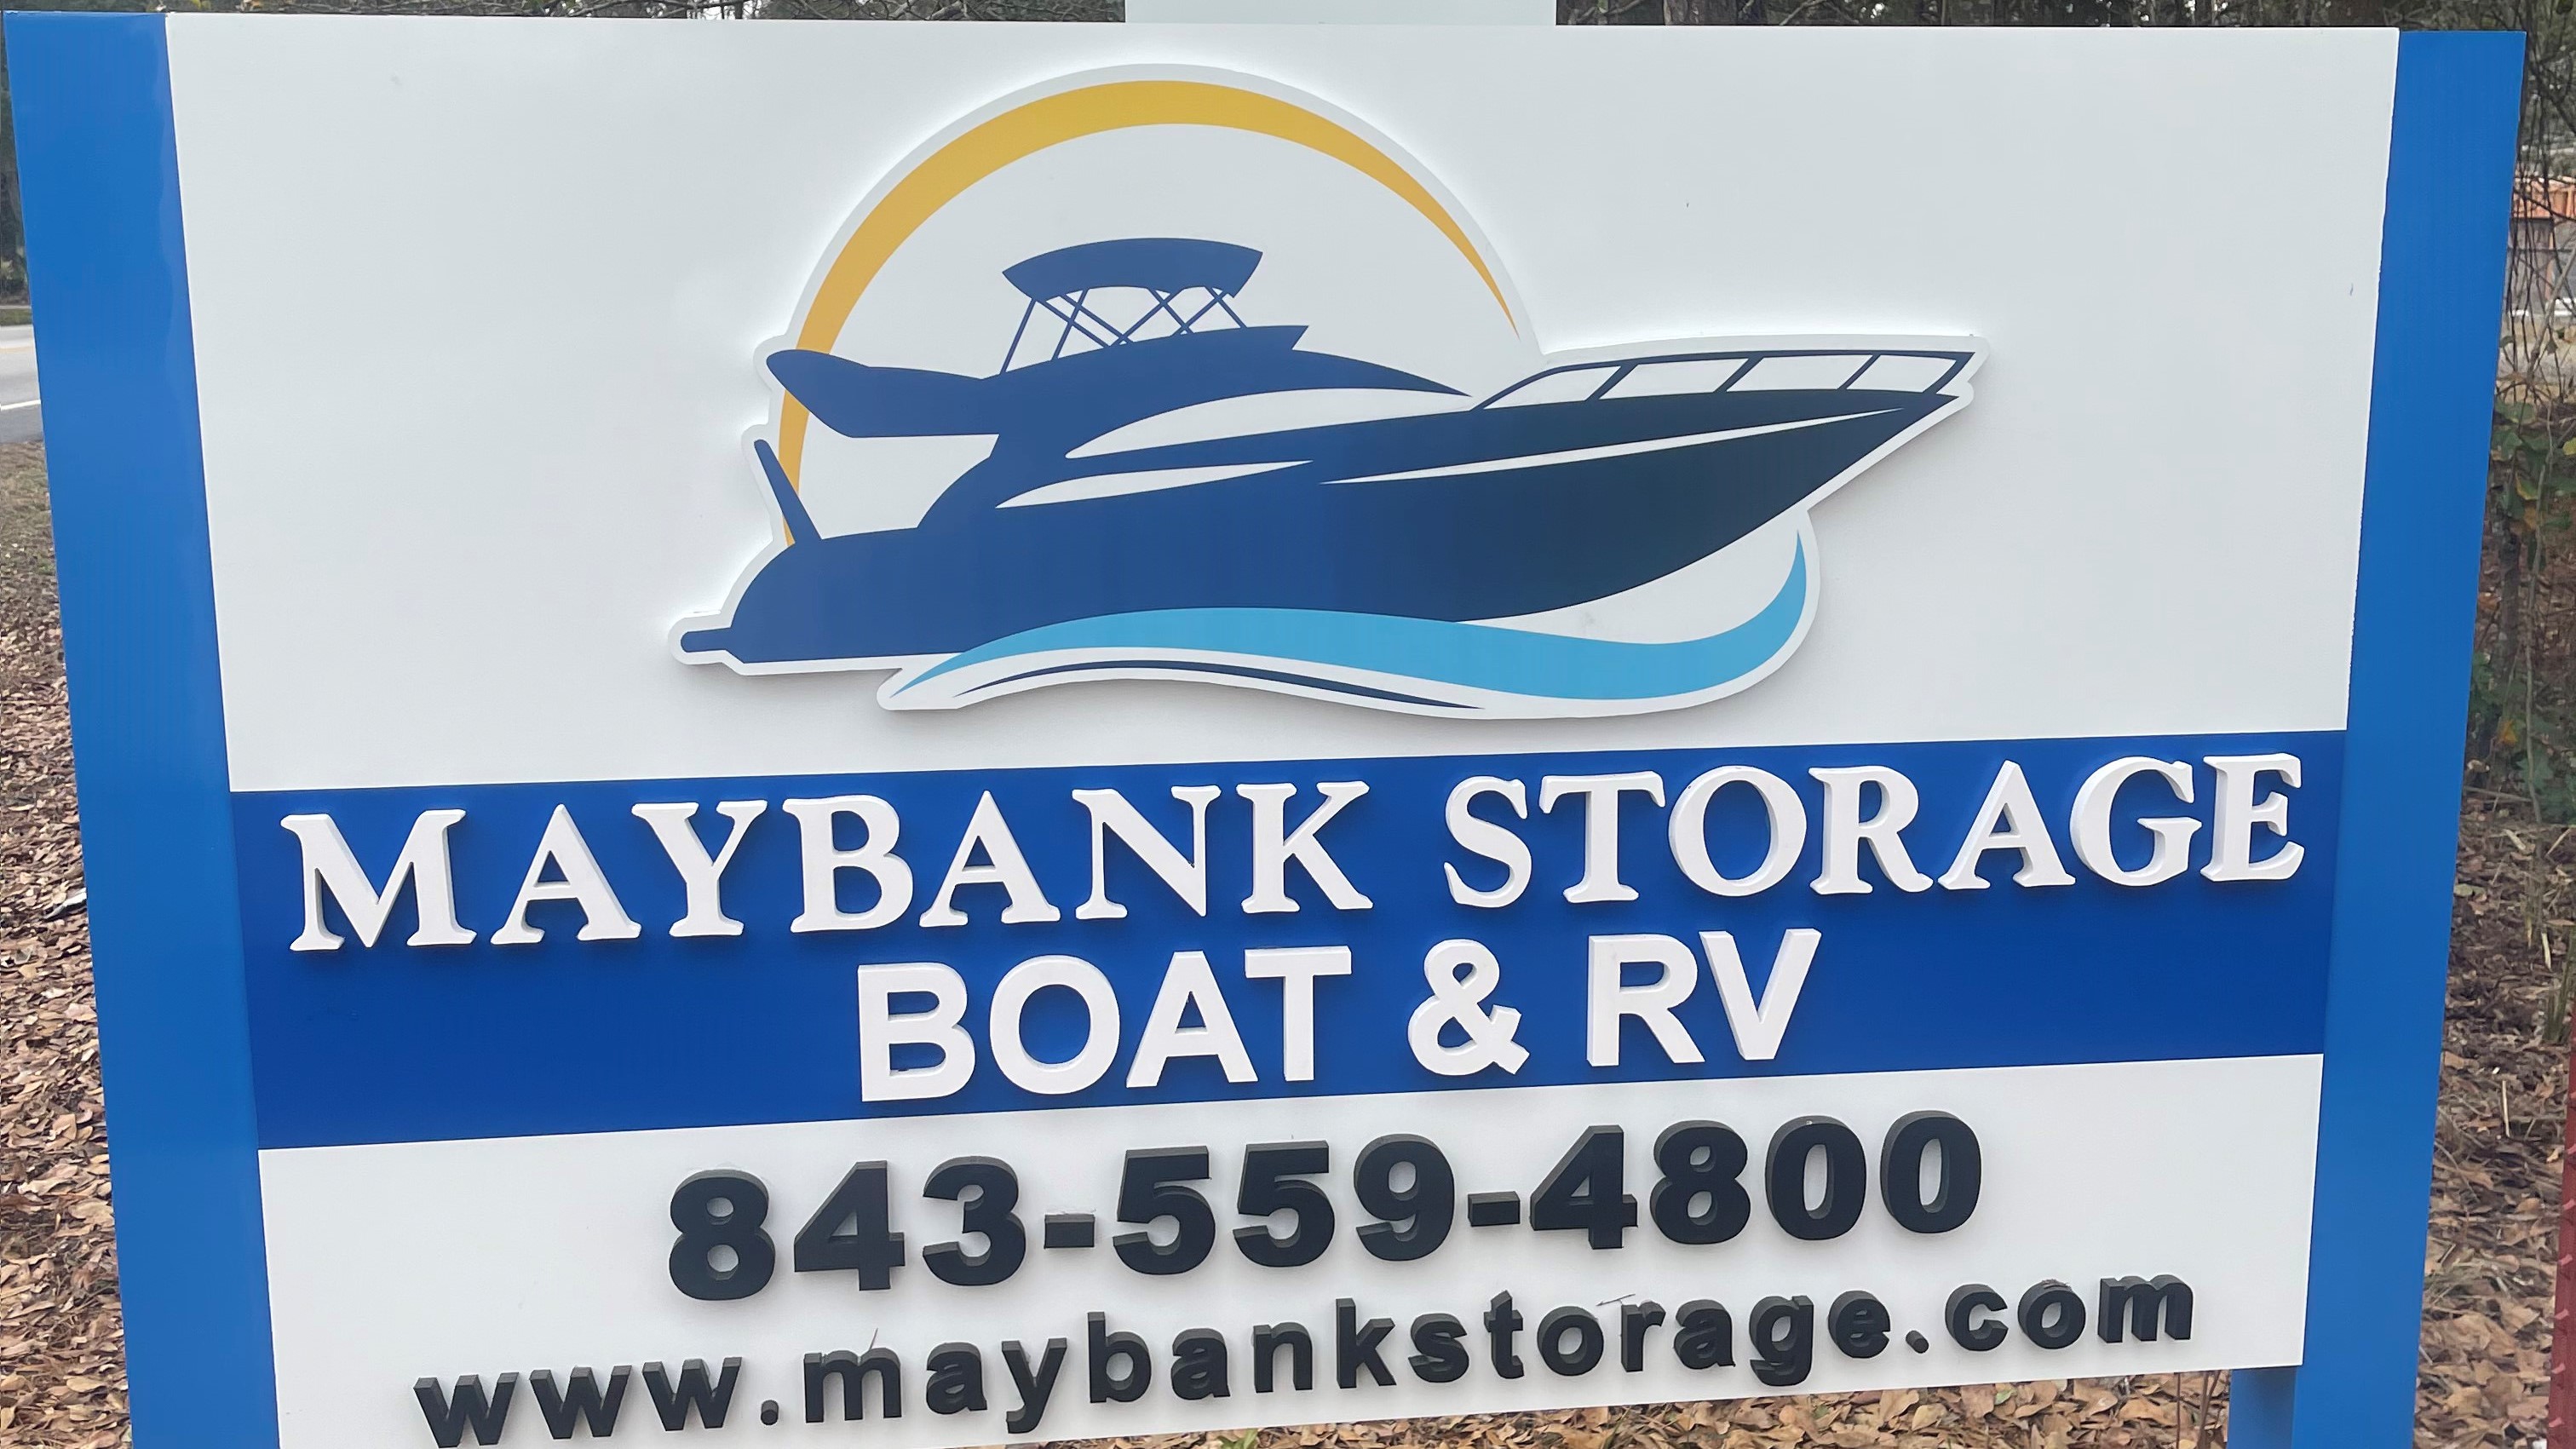 Maybank Storage Boat & RV